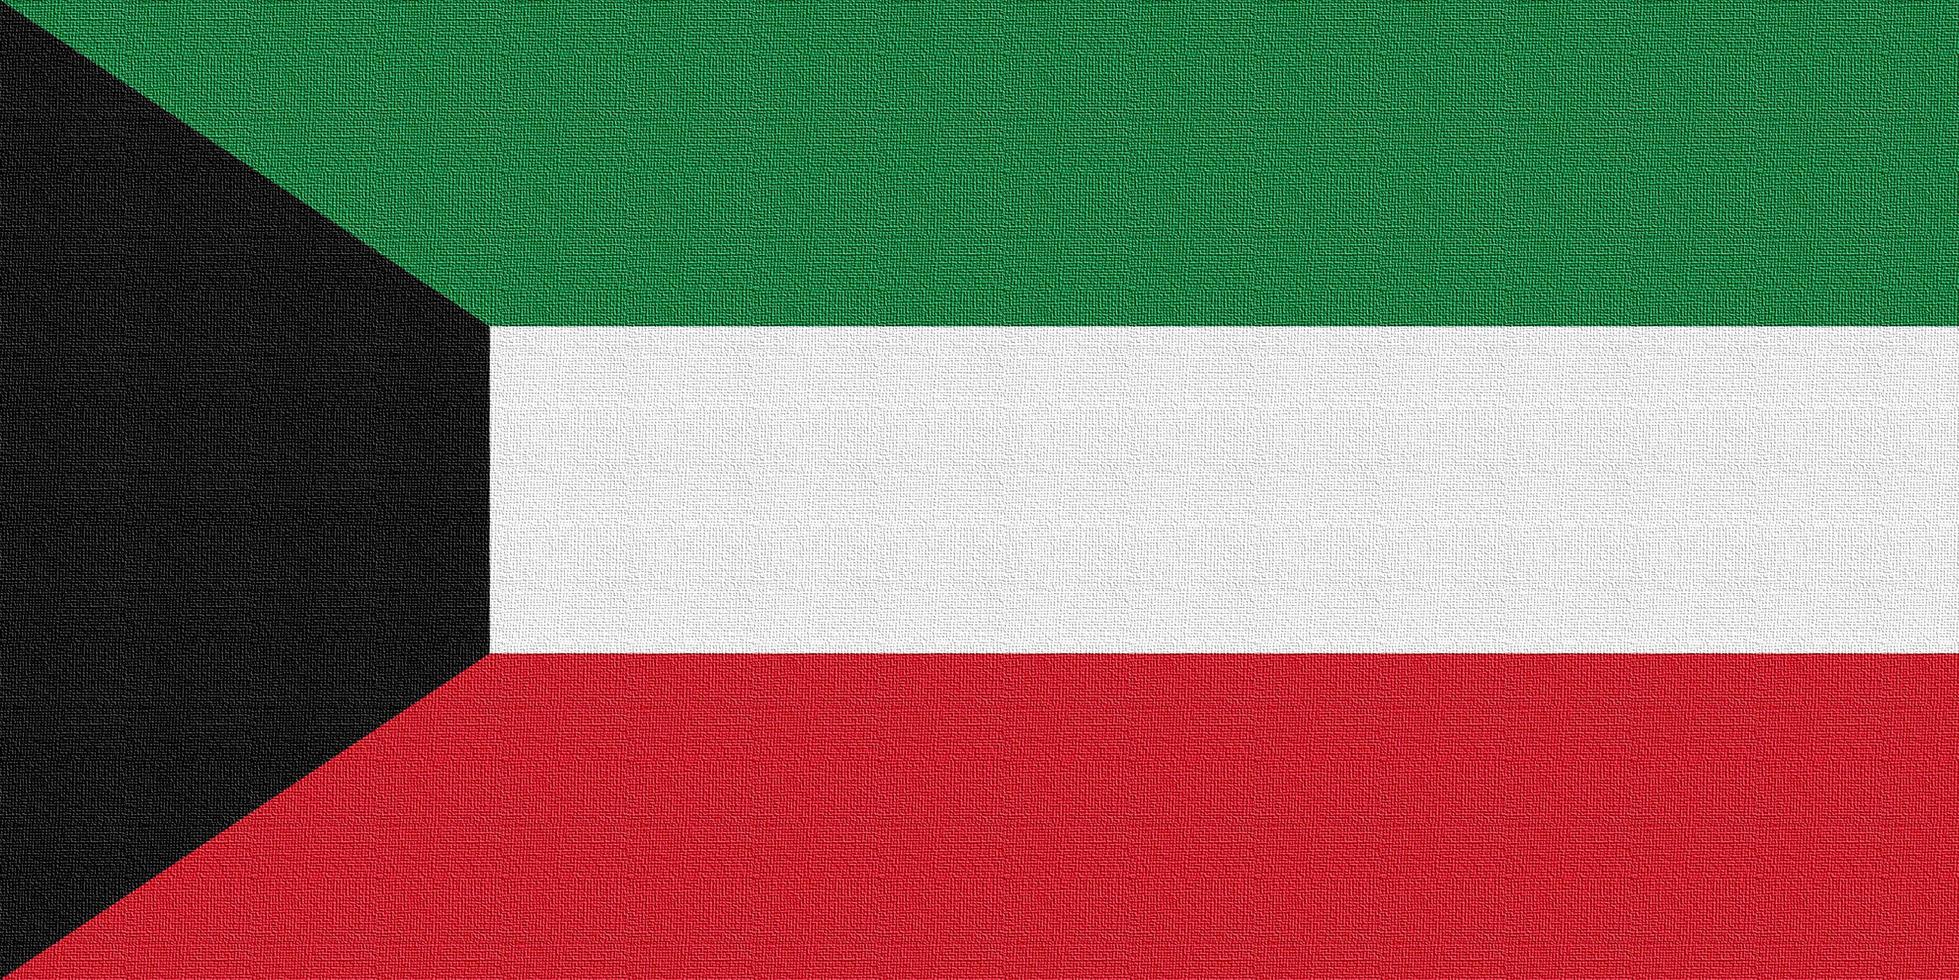 Illustration of the national flag of Kuwait photo